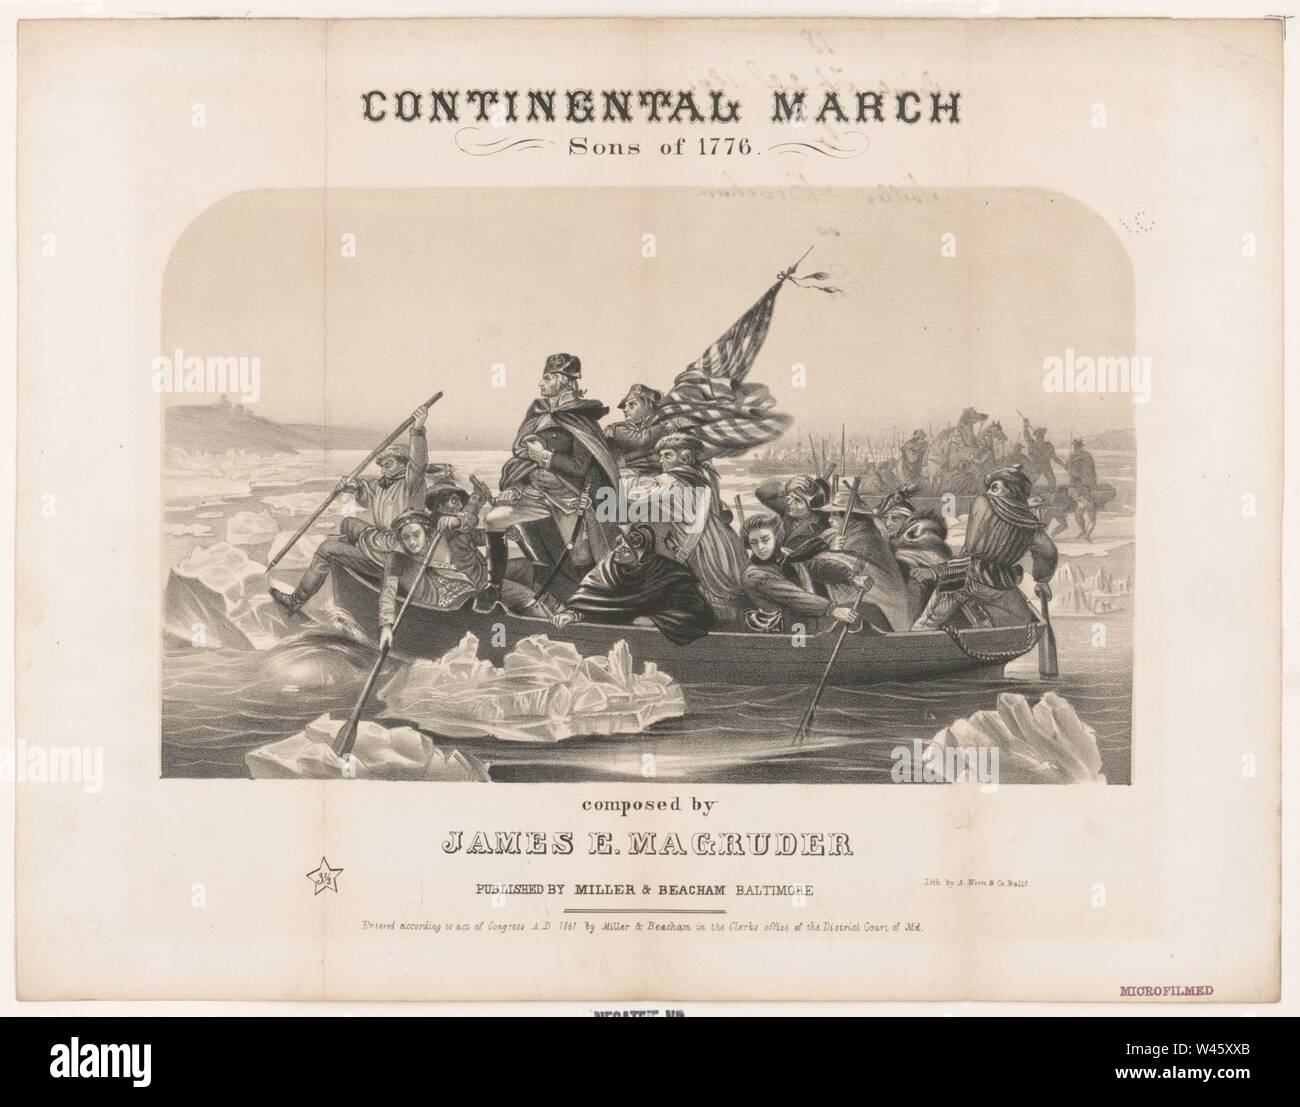 Continental März - Söhne von 1776 - komponiert von James E. Magruder-lith. von A. Hoen & Co. Balto. Stockfoto